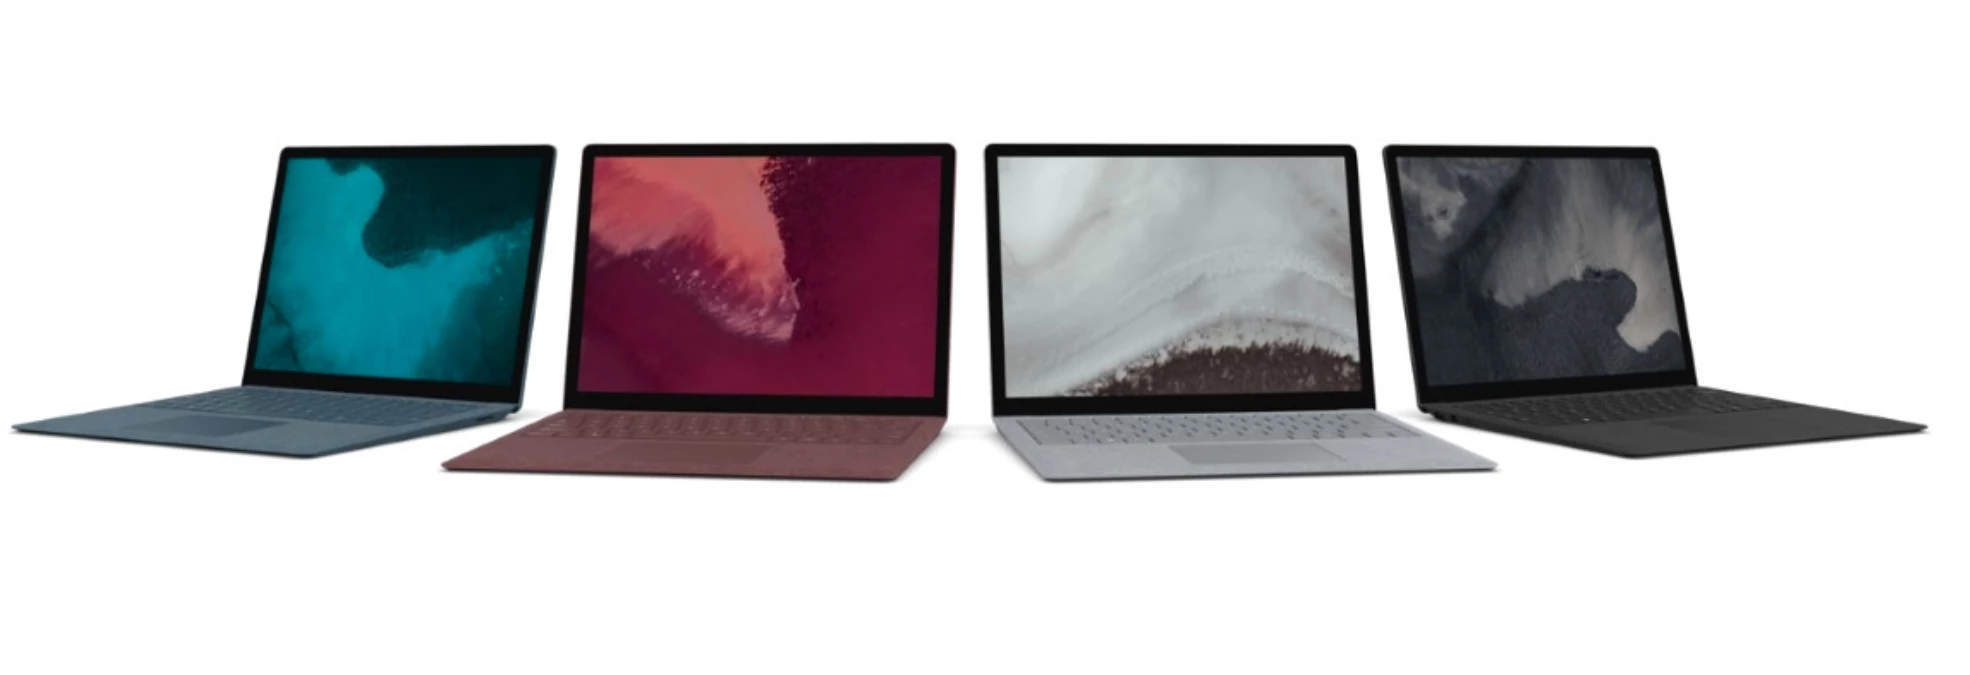 Yüzde 85 Daha Hızlı Microsoft Surface Laptop 2